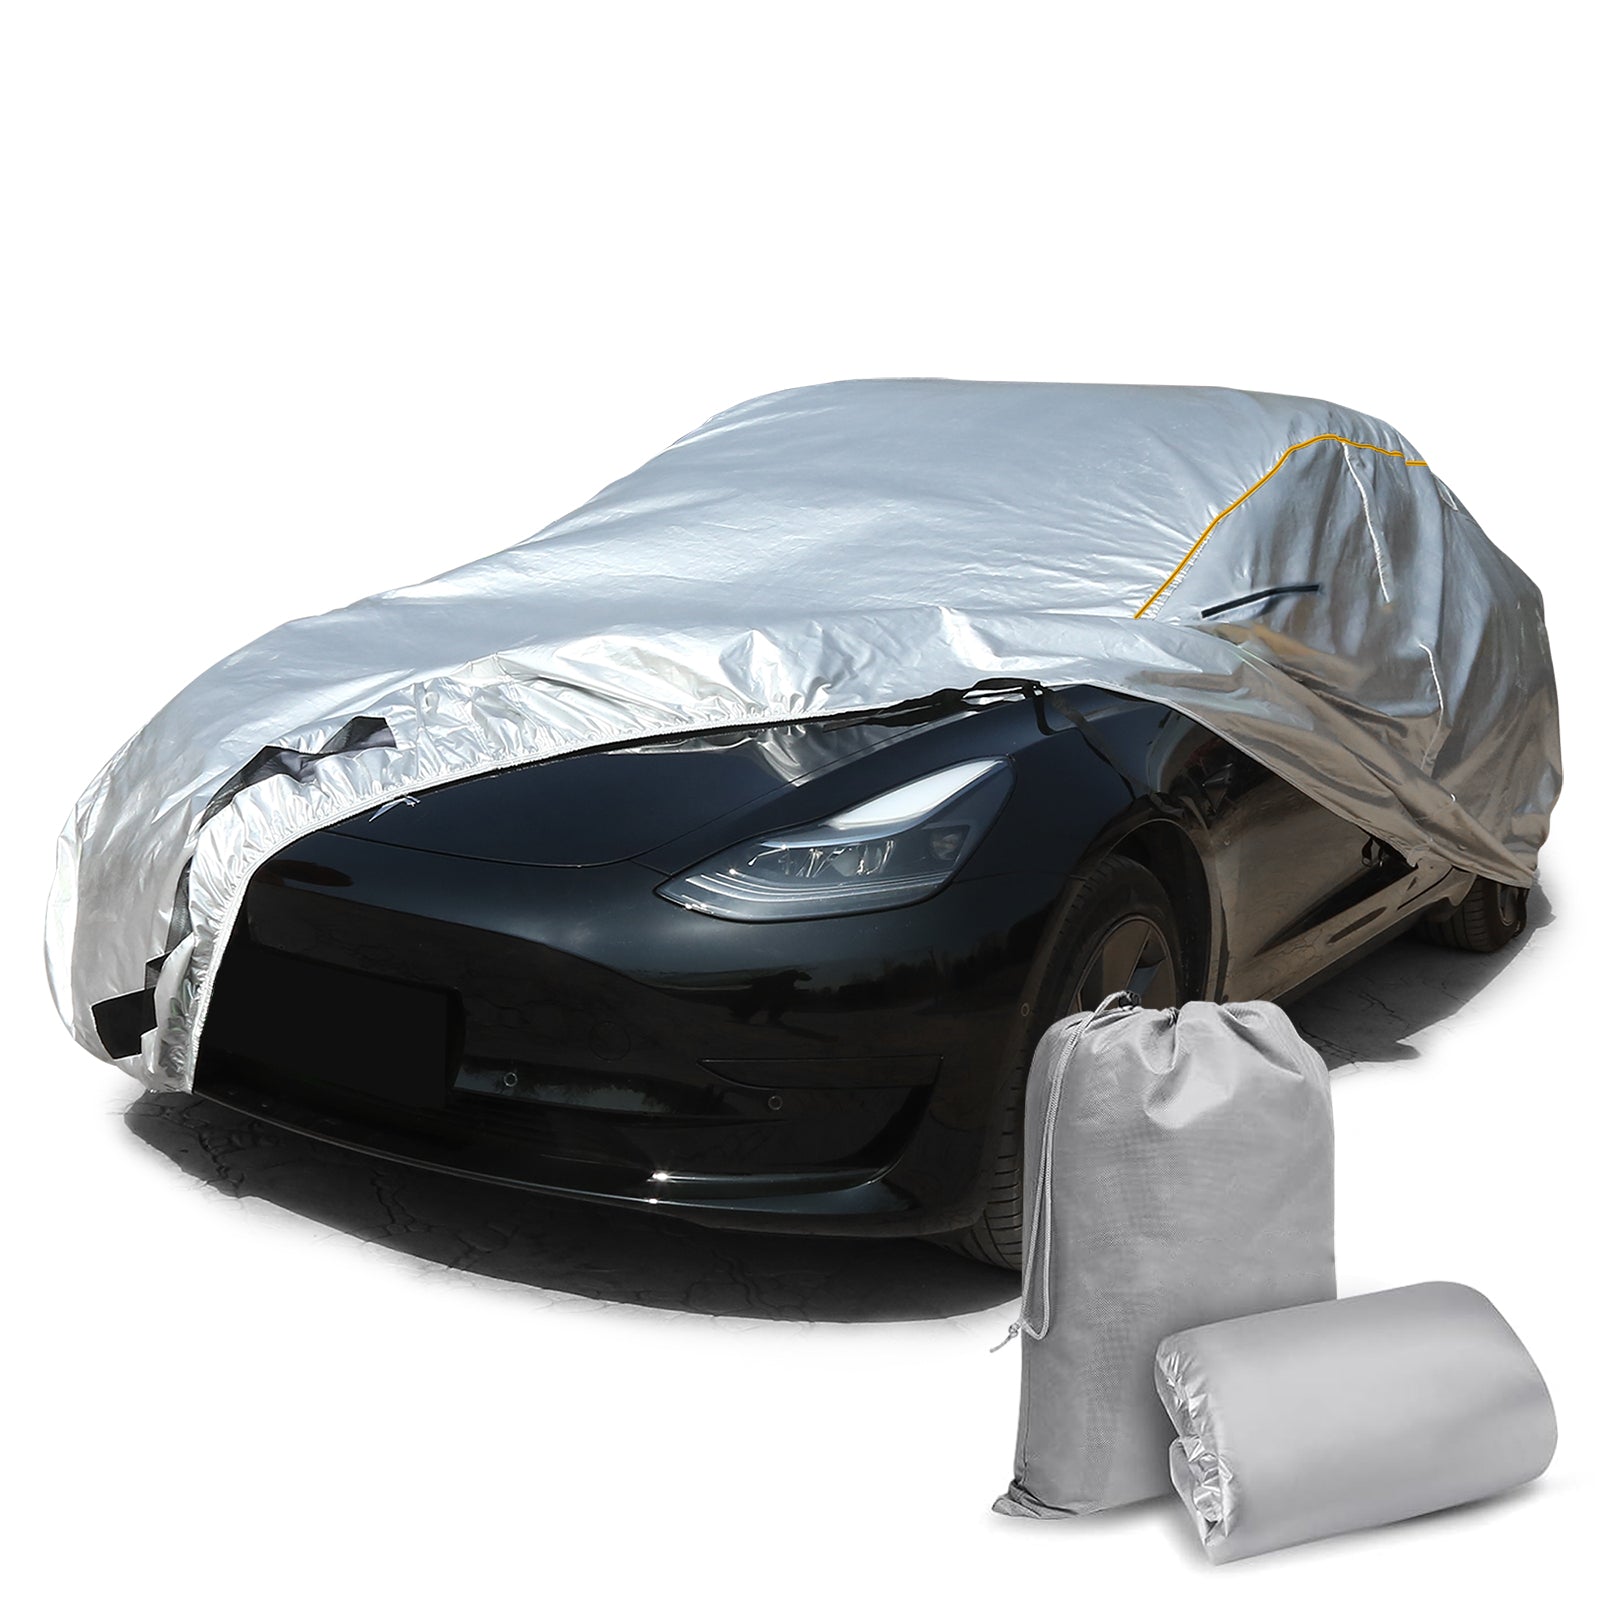 Daolar Wasserdichte Auto abdeckung für Tesla Modell 3/S/X/Y Volle